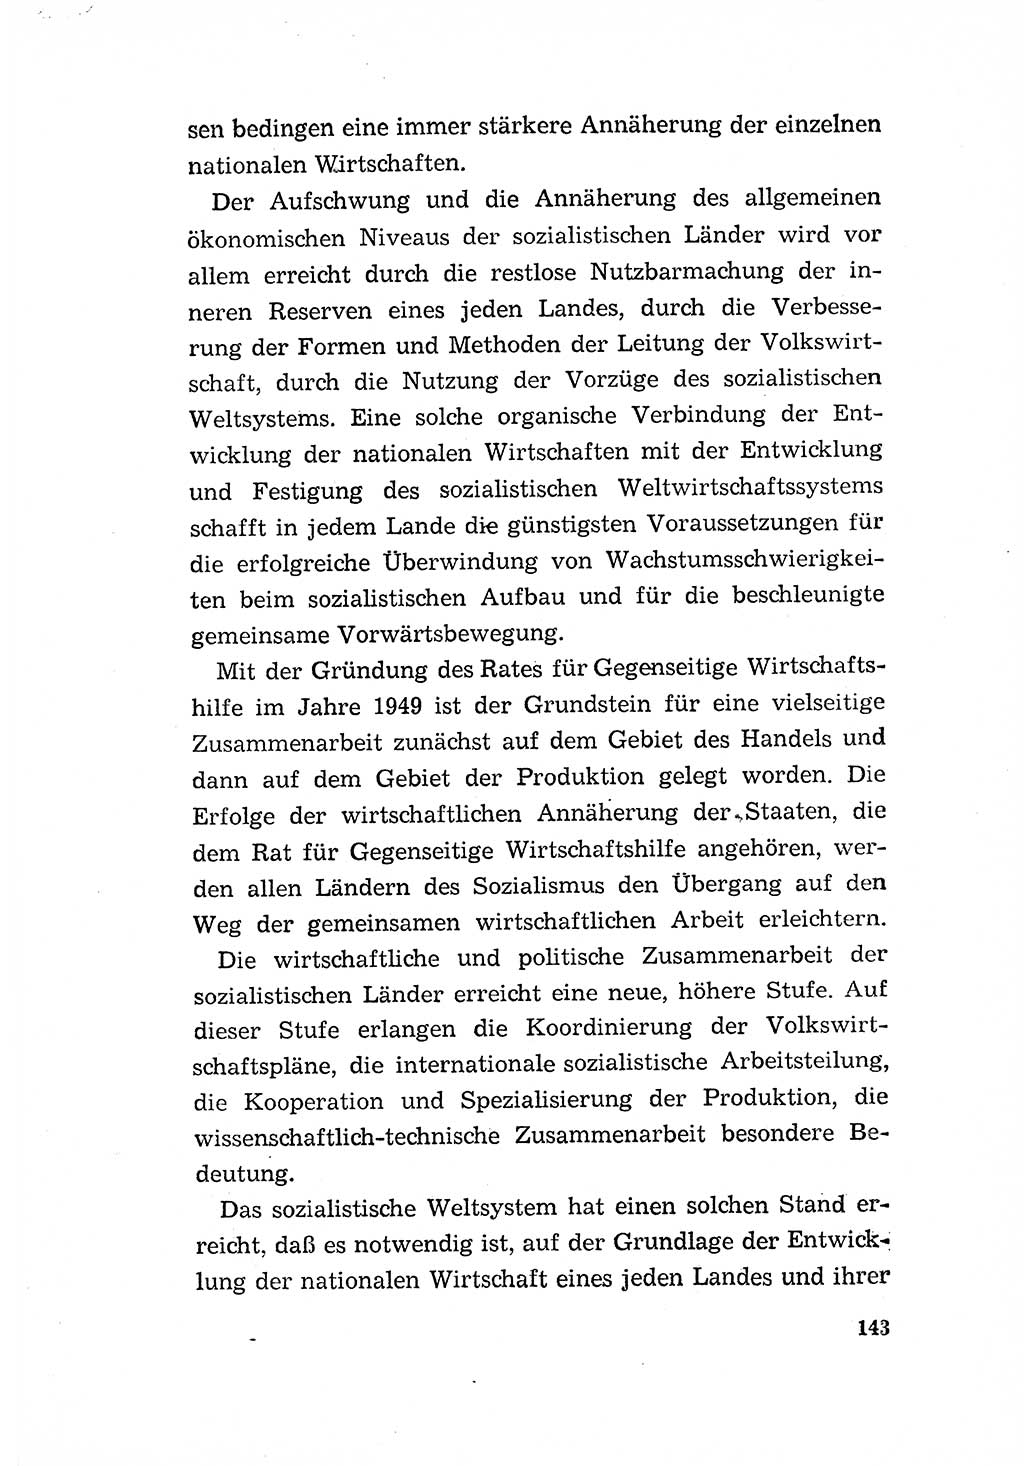 Programm der Sozialistischen Einheitspartei Deutschlands (SED) [Deutsche Demokratische Republik (DDR)] 1963, Seite 143 (Progr. SED DDR 1963, S. 143)